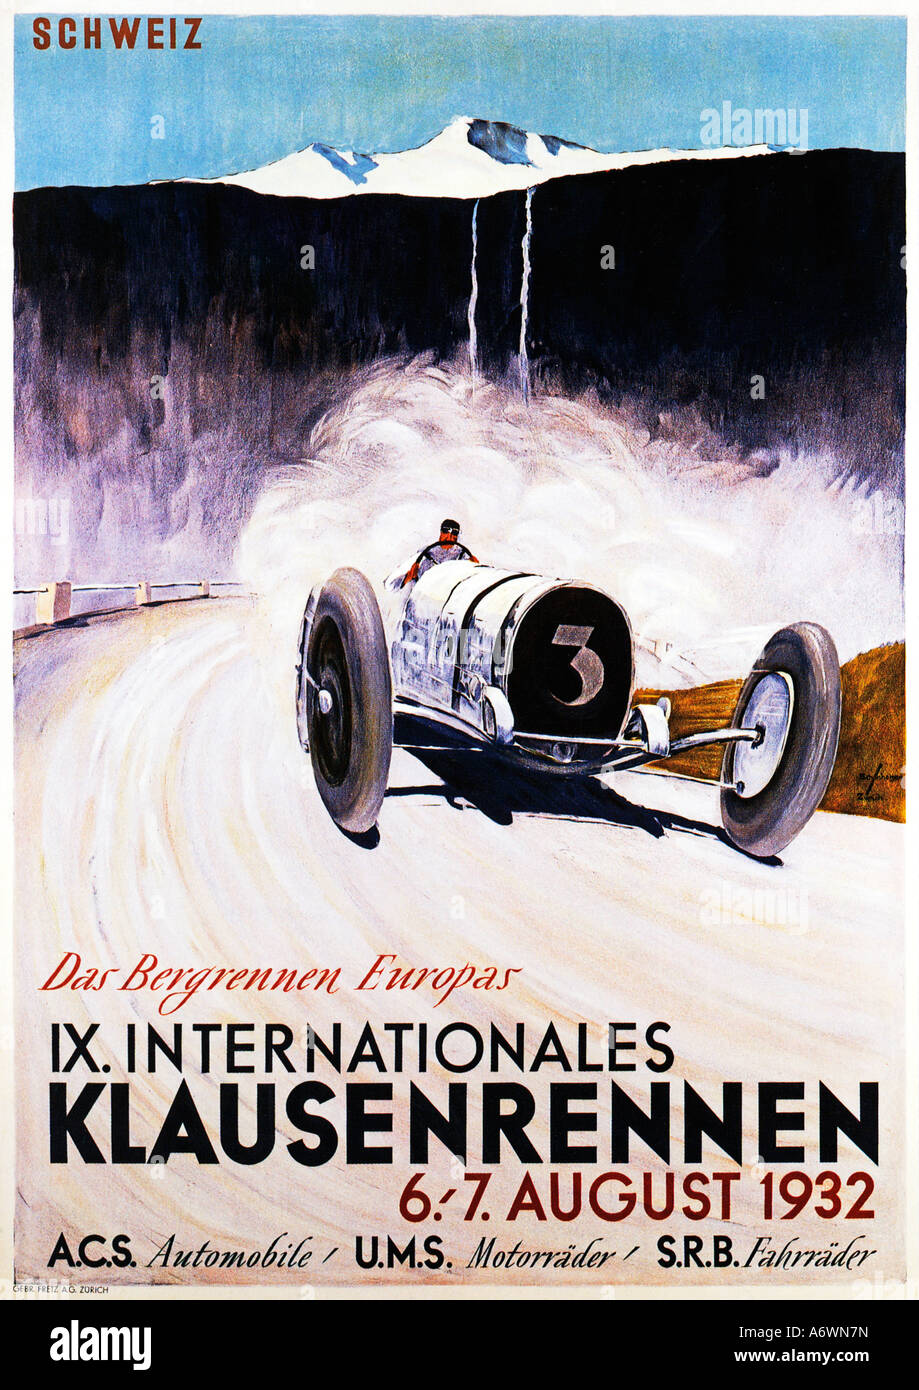 Motore Klausenrennen gara 1932 poster per la famosa Svizzera montagna corsa del motore che mostra una Bugatti in pieno volo Foto Stock